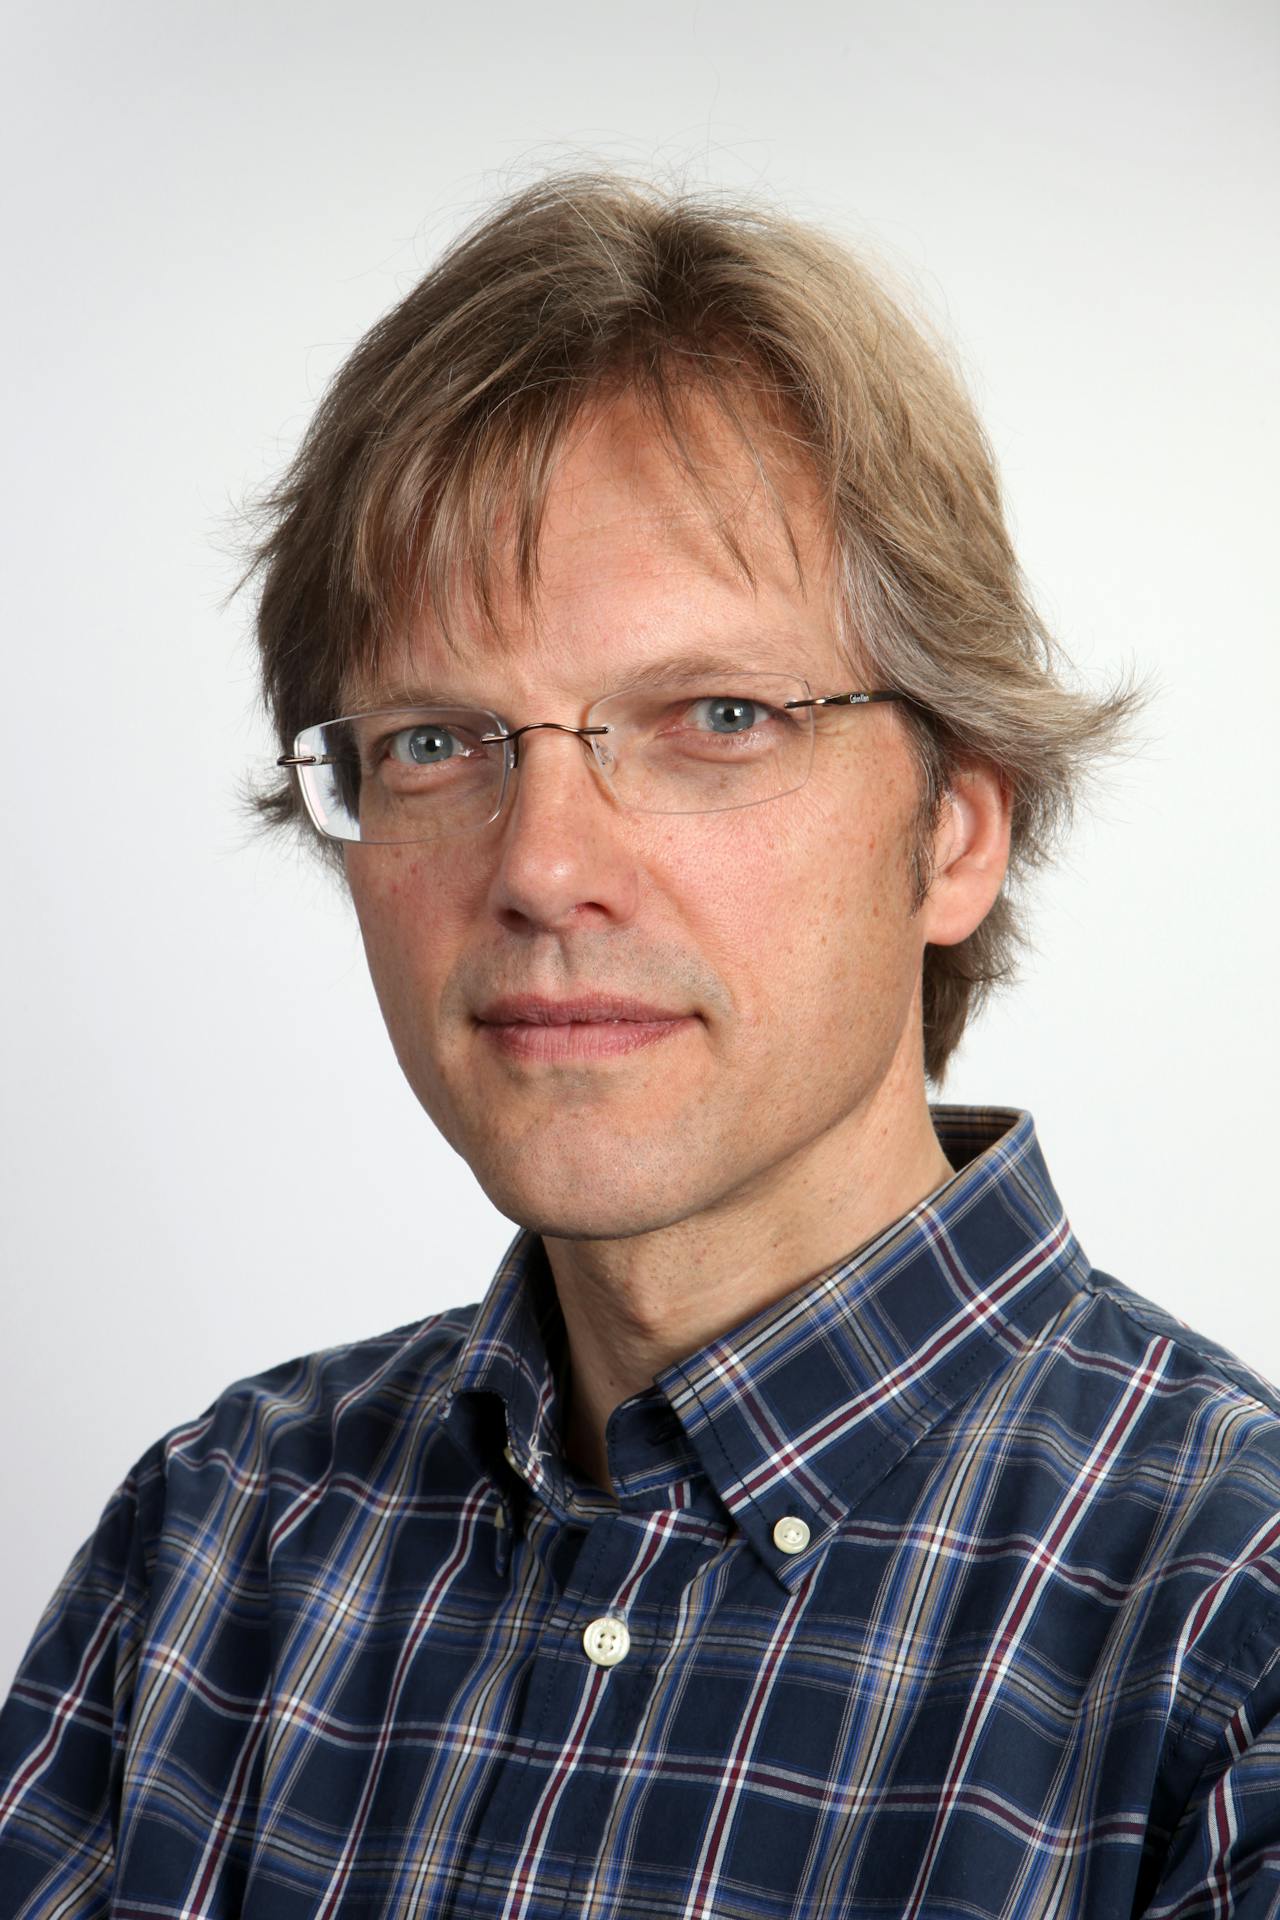 Portretfoto van historicus Henk Kern.